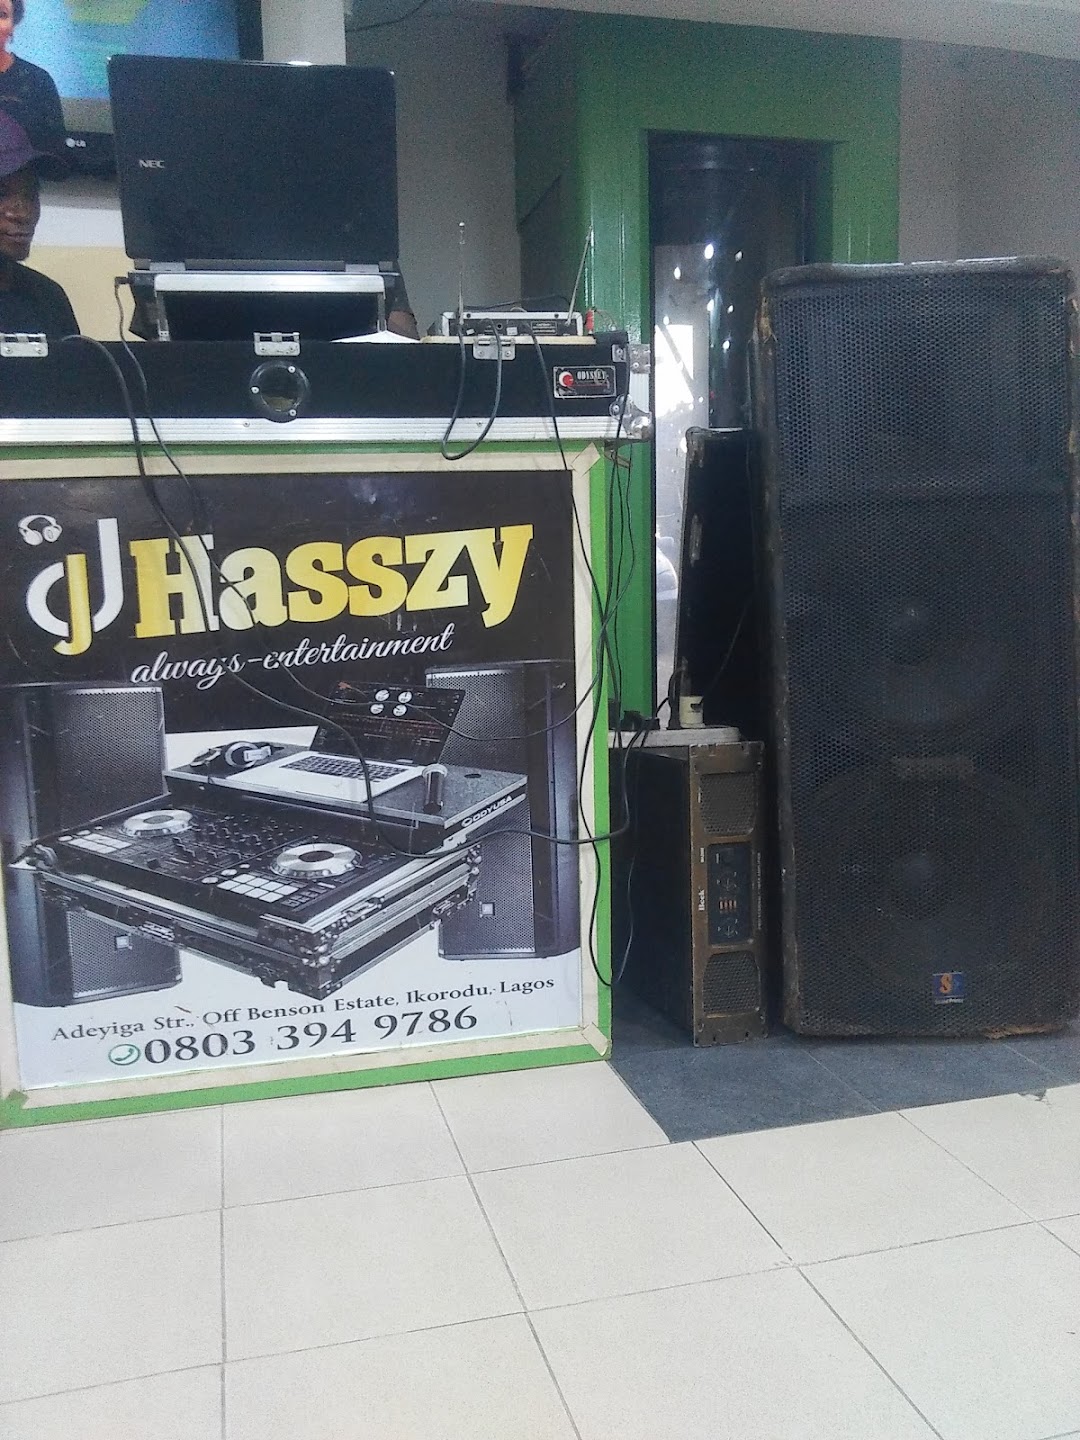 DJ HASSZY